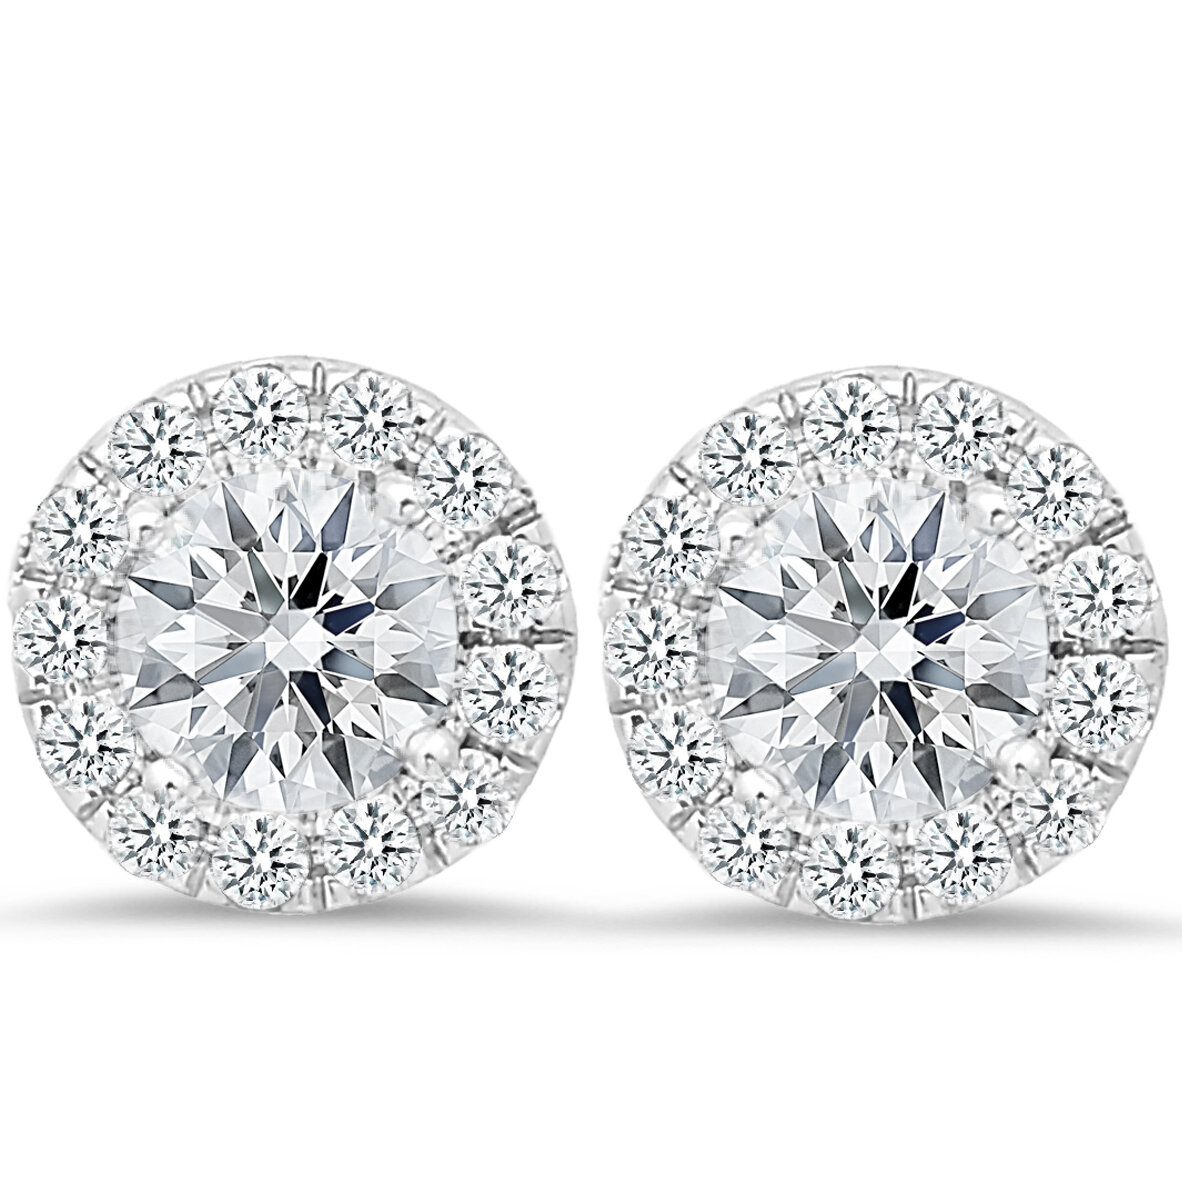 Buy Akiko White Gold Diamond Stud Earrings Online | Designer Jewellery  online Shopping India | Diamond Earrings Online Shopping